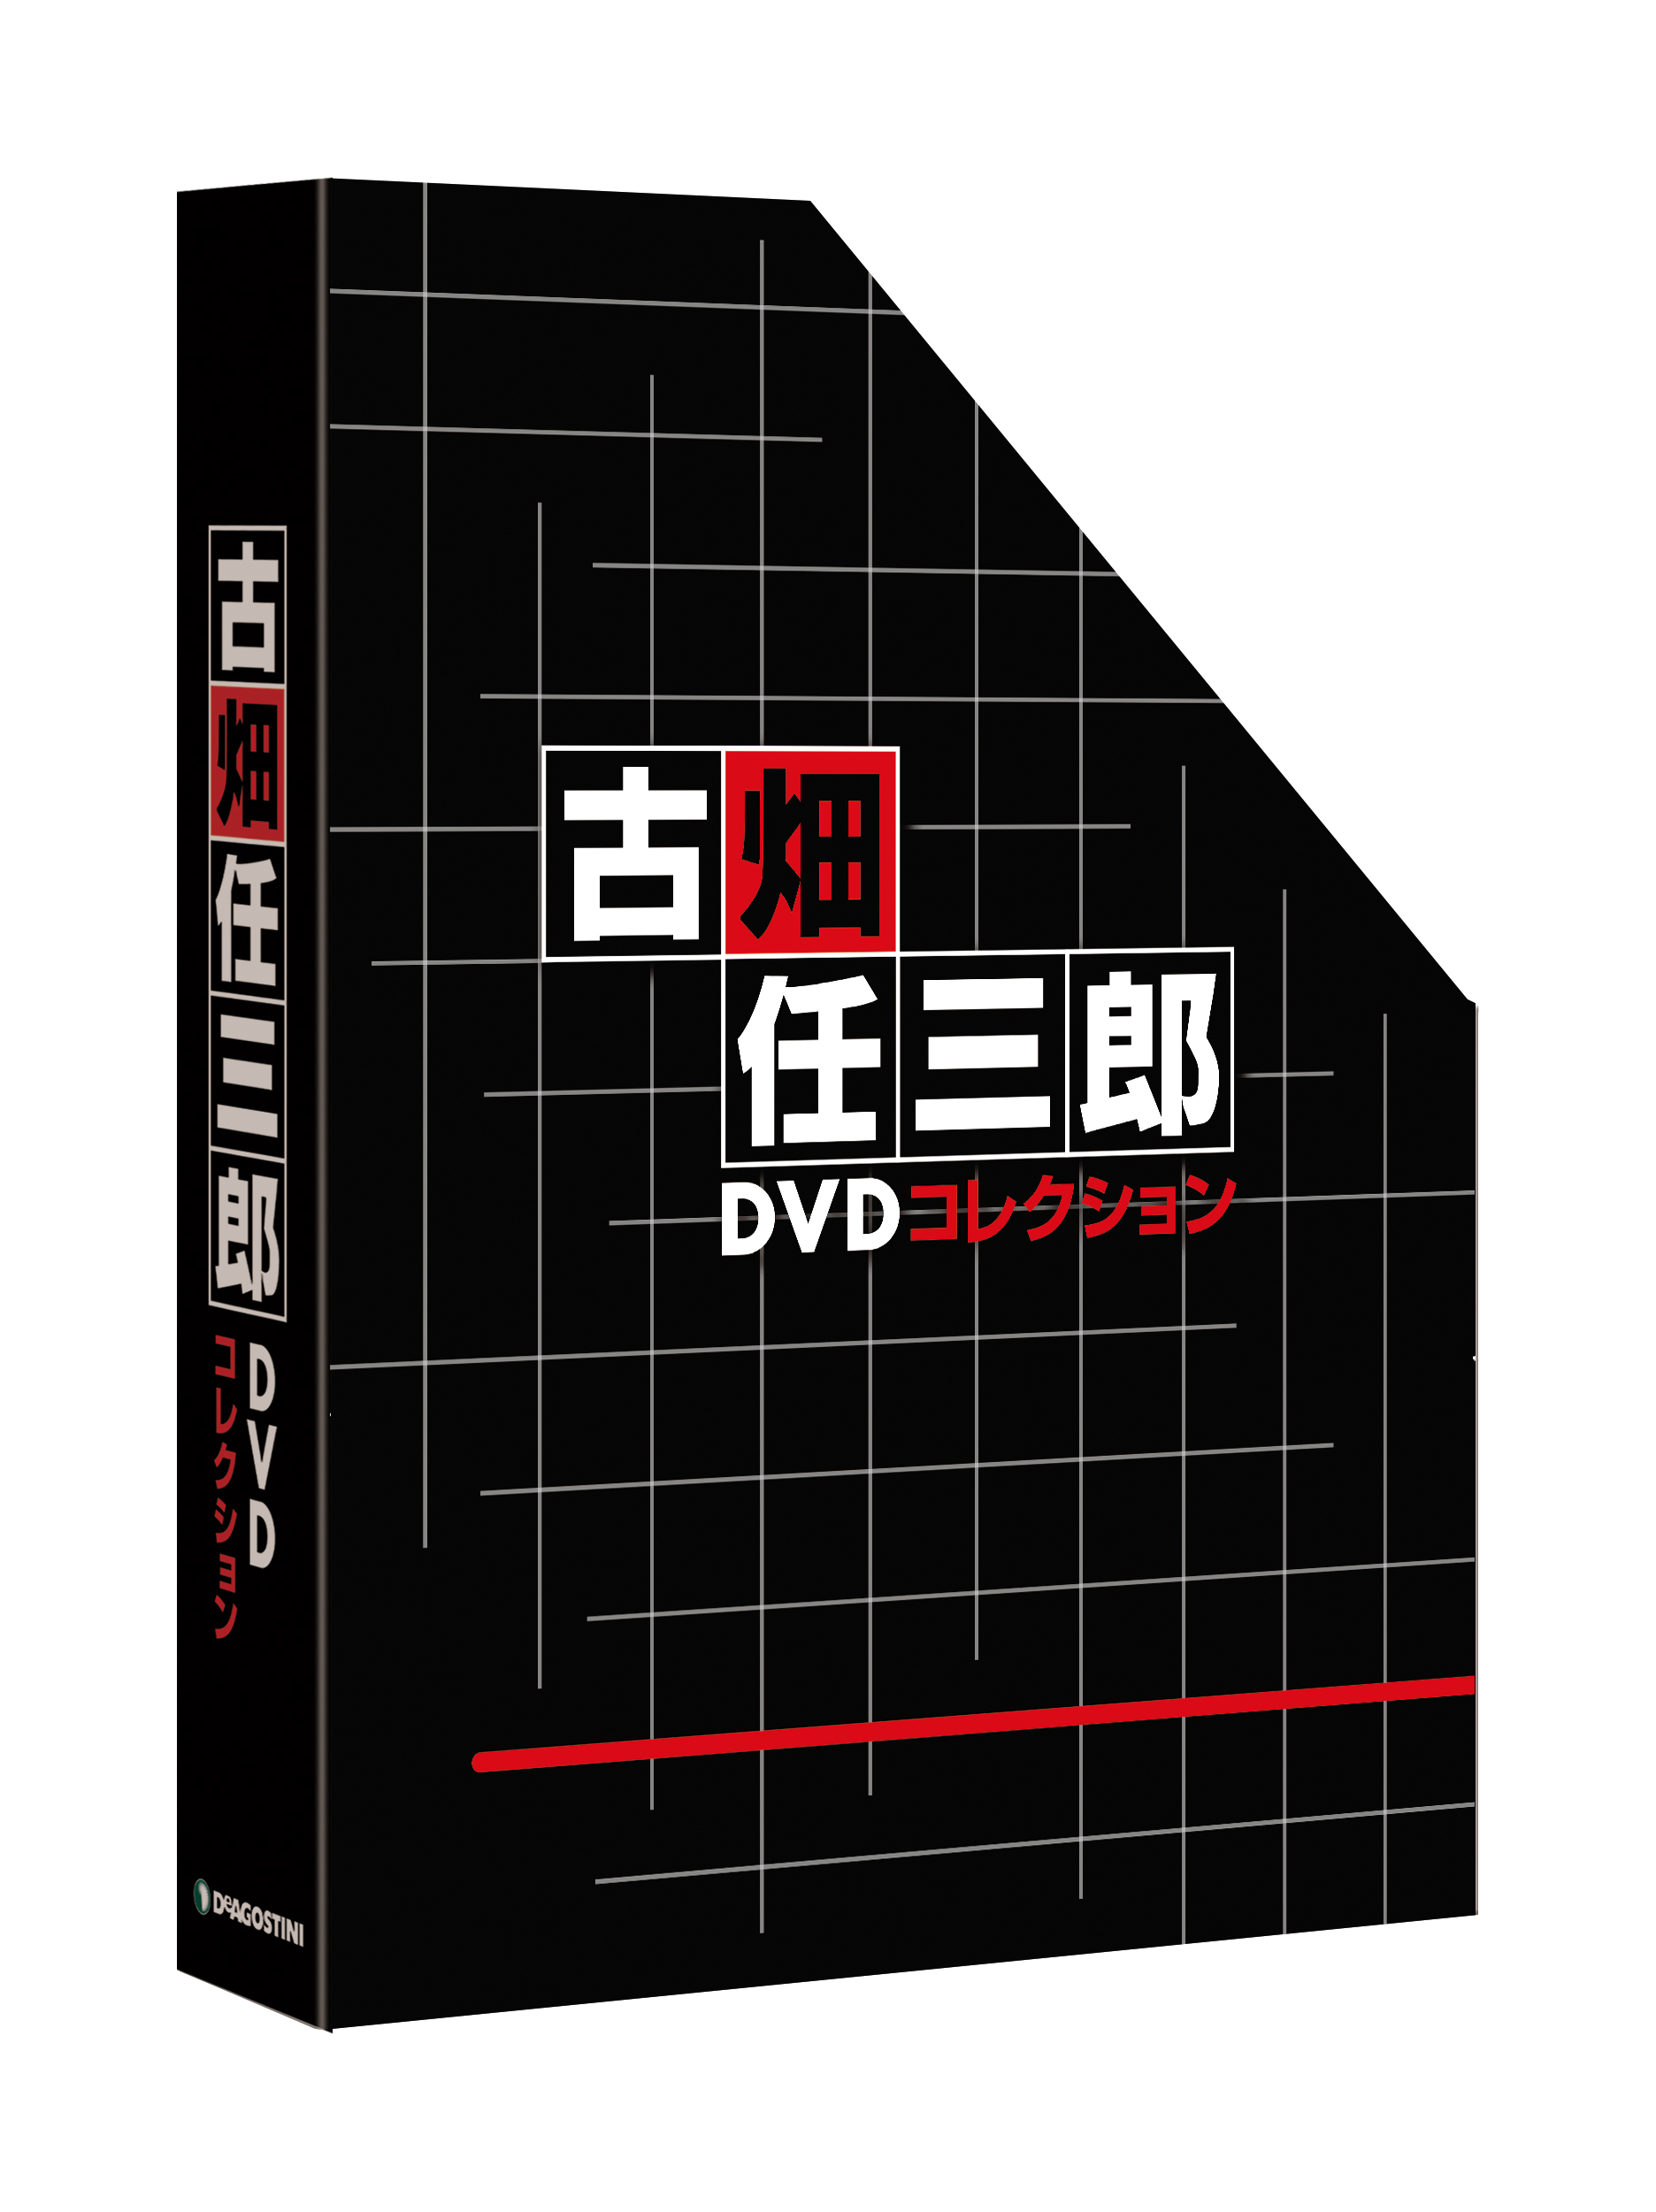 DVD付きマガジン『古畑任三郎 DVDコレクション』創刊記念 スペシャル動画公開 - amass